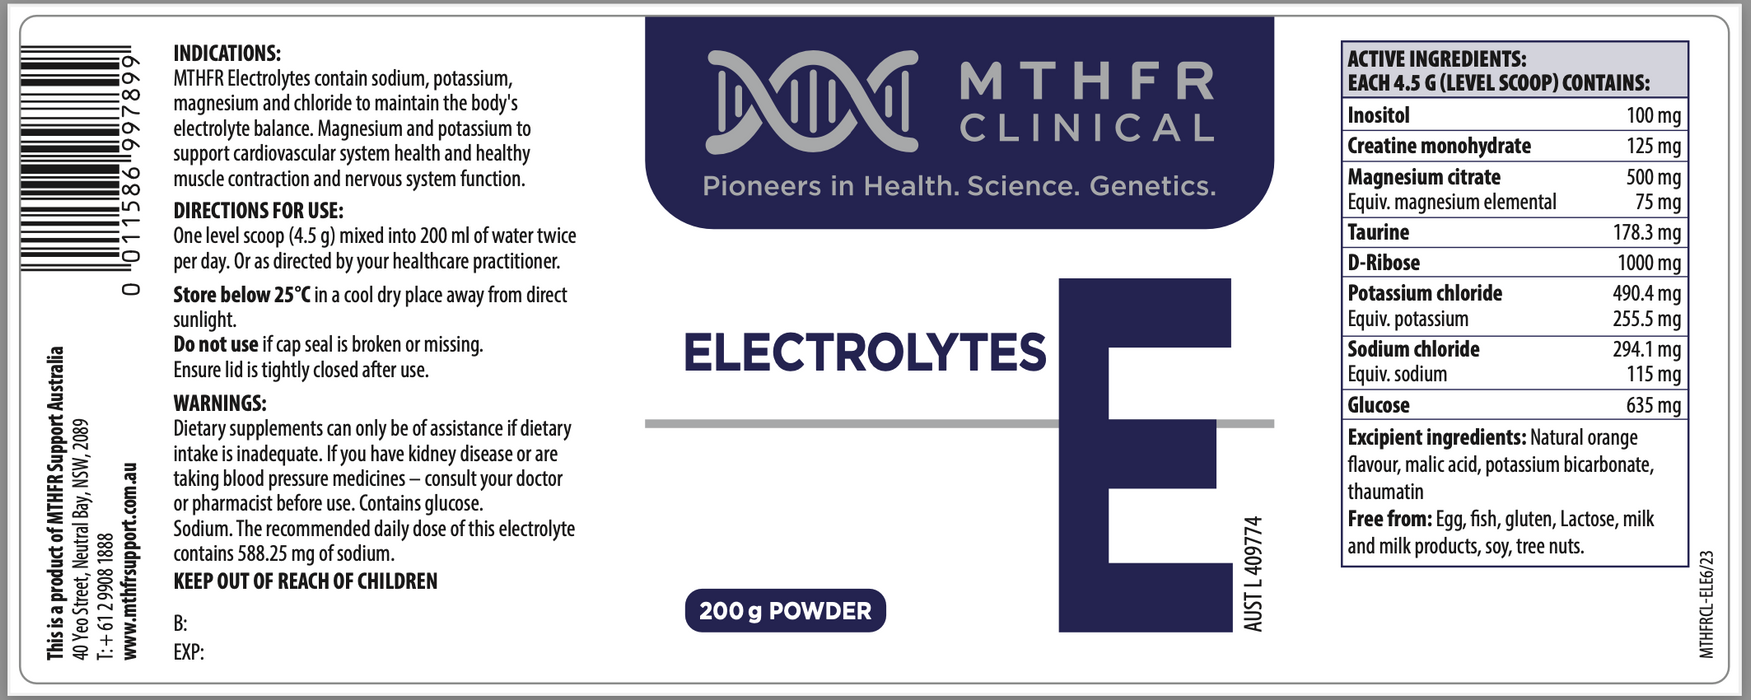 MTHFR Clinical Electrolytes Powder 200g